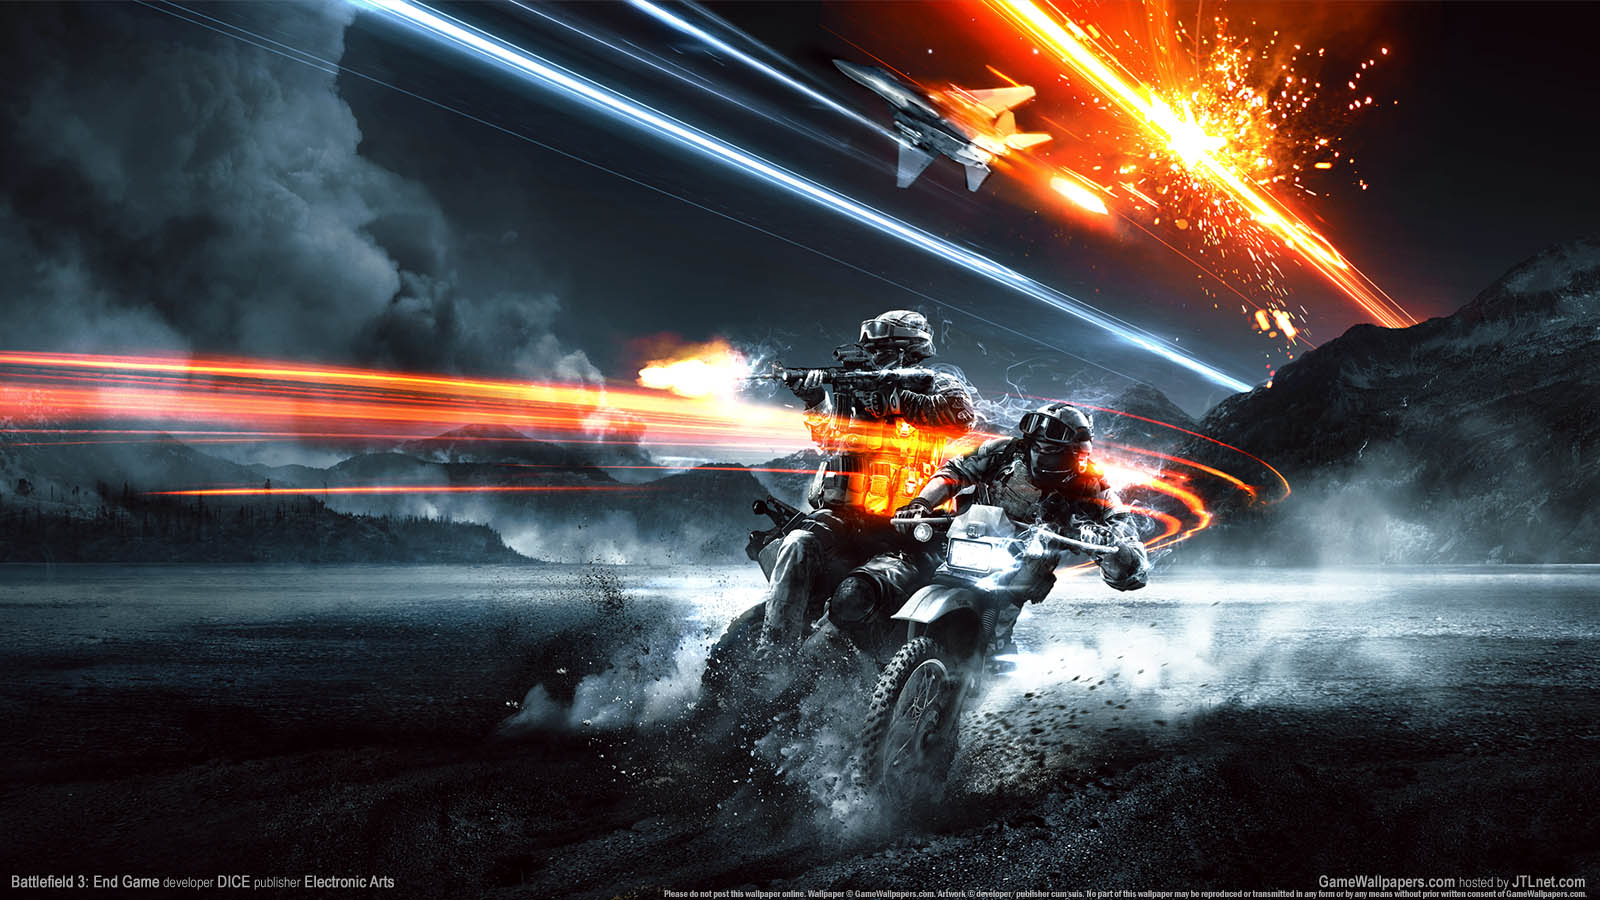 Battlefield 3%3A End Game fond d'cran 01 1600x900